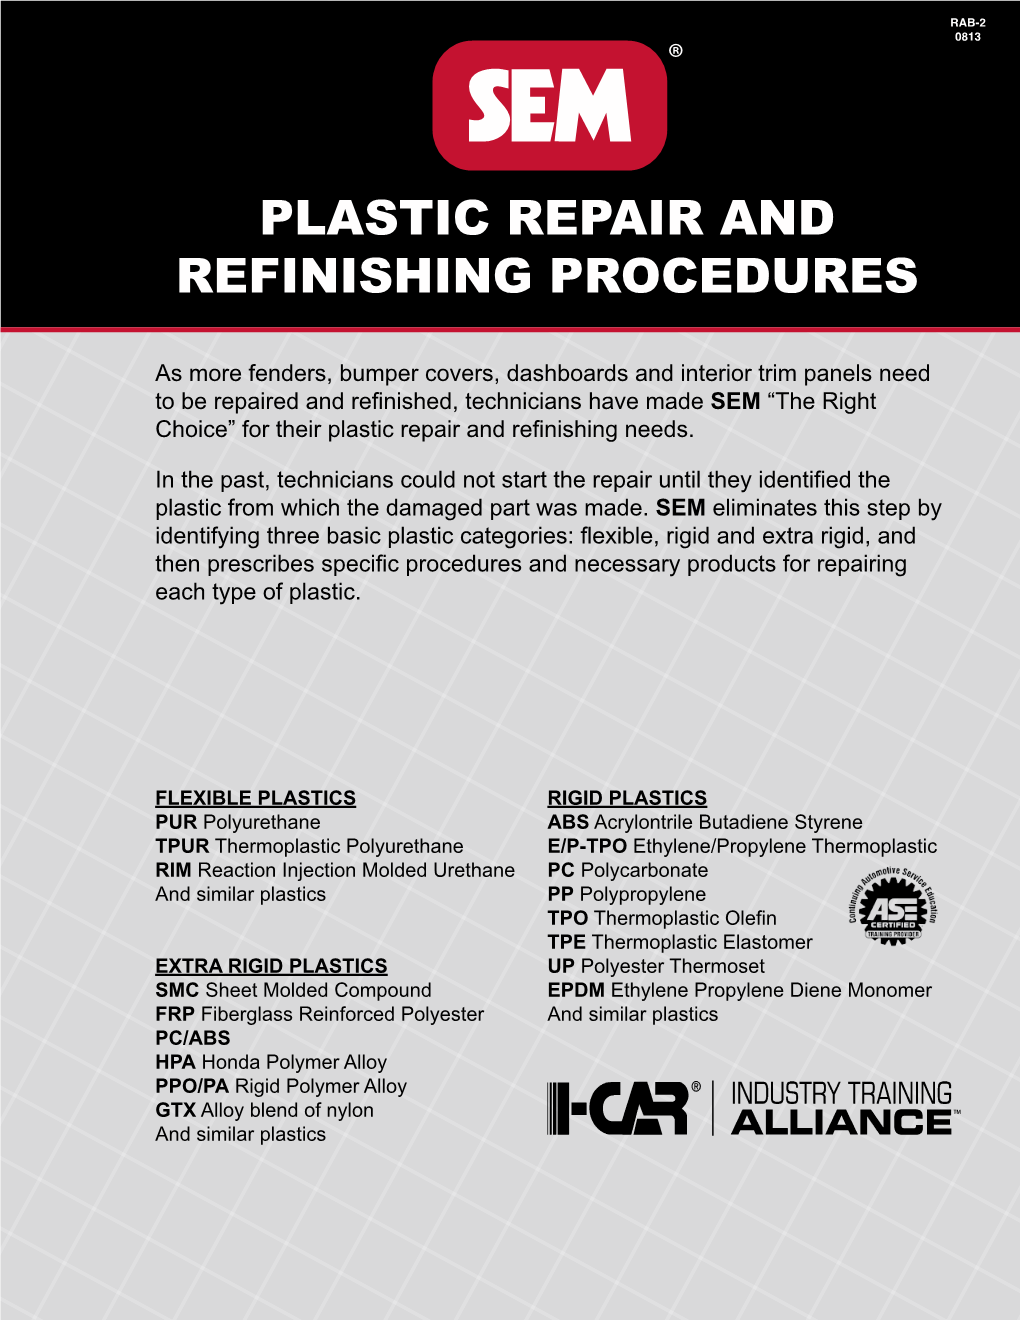 Plastic Repair and Refinishing Procedures